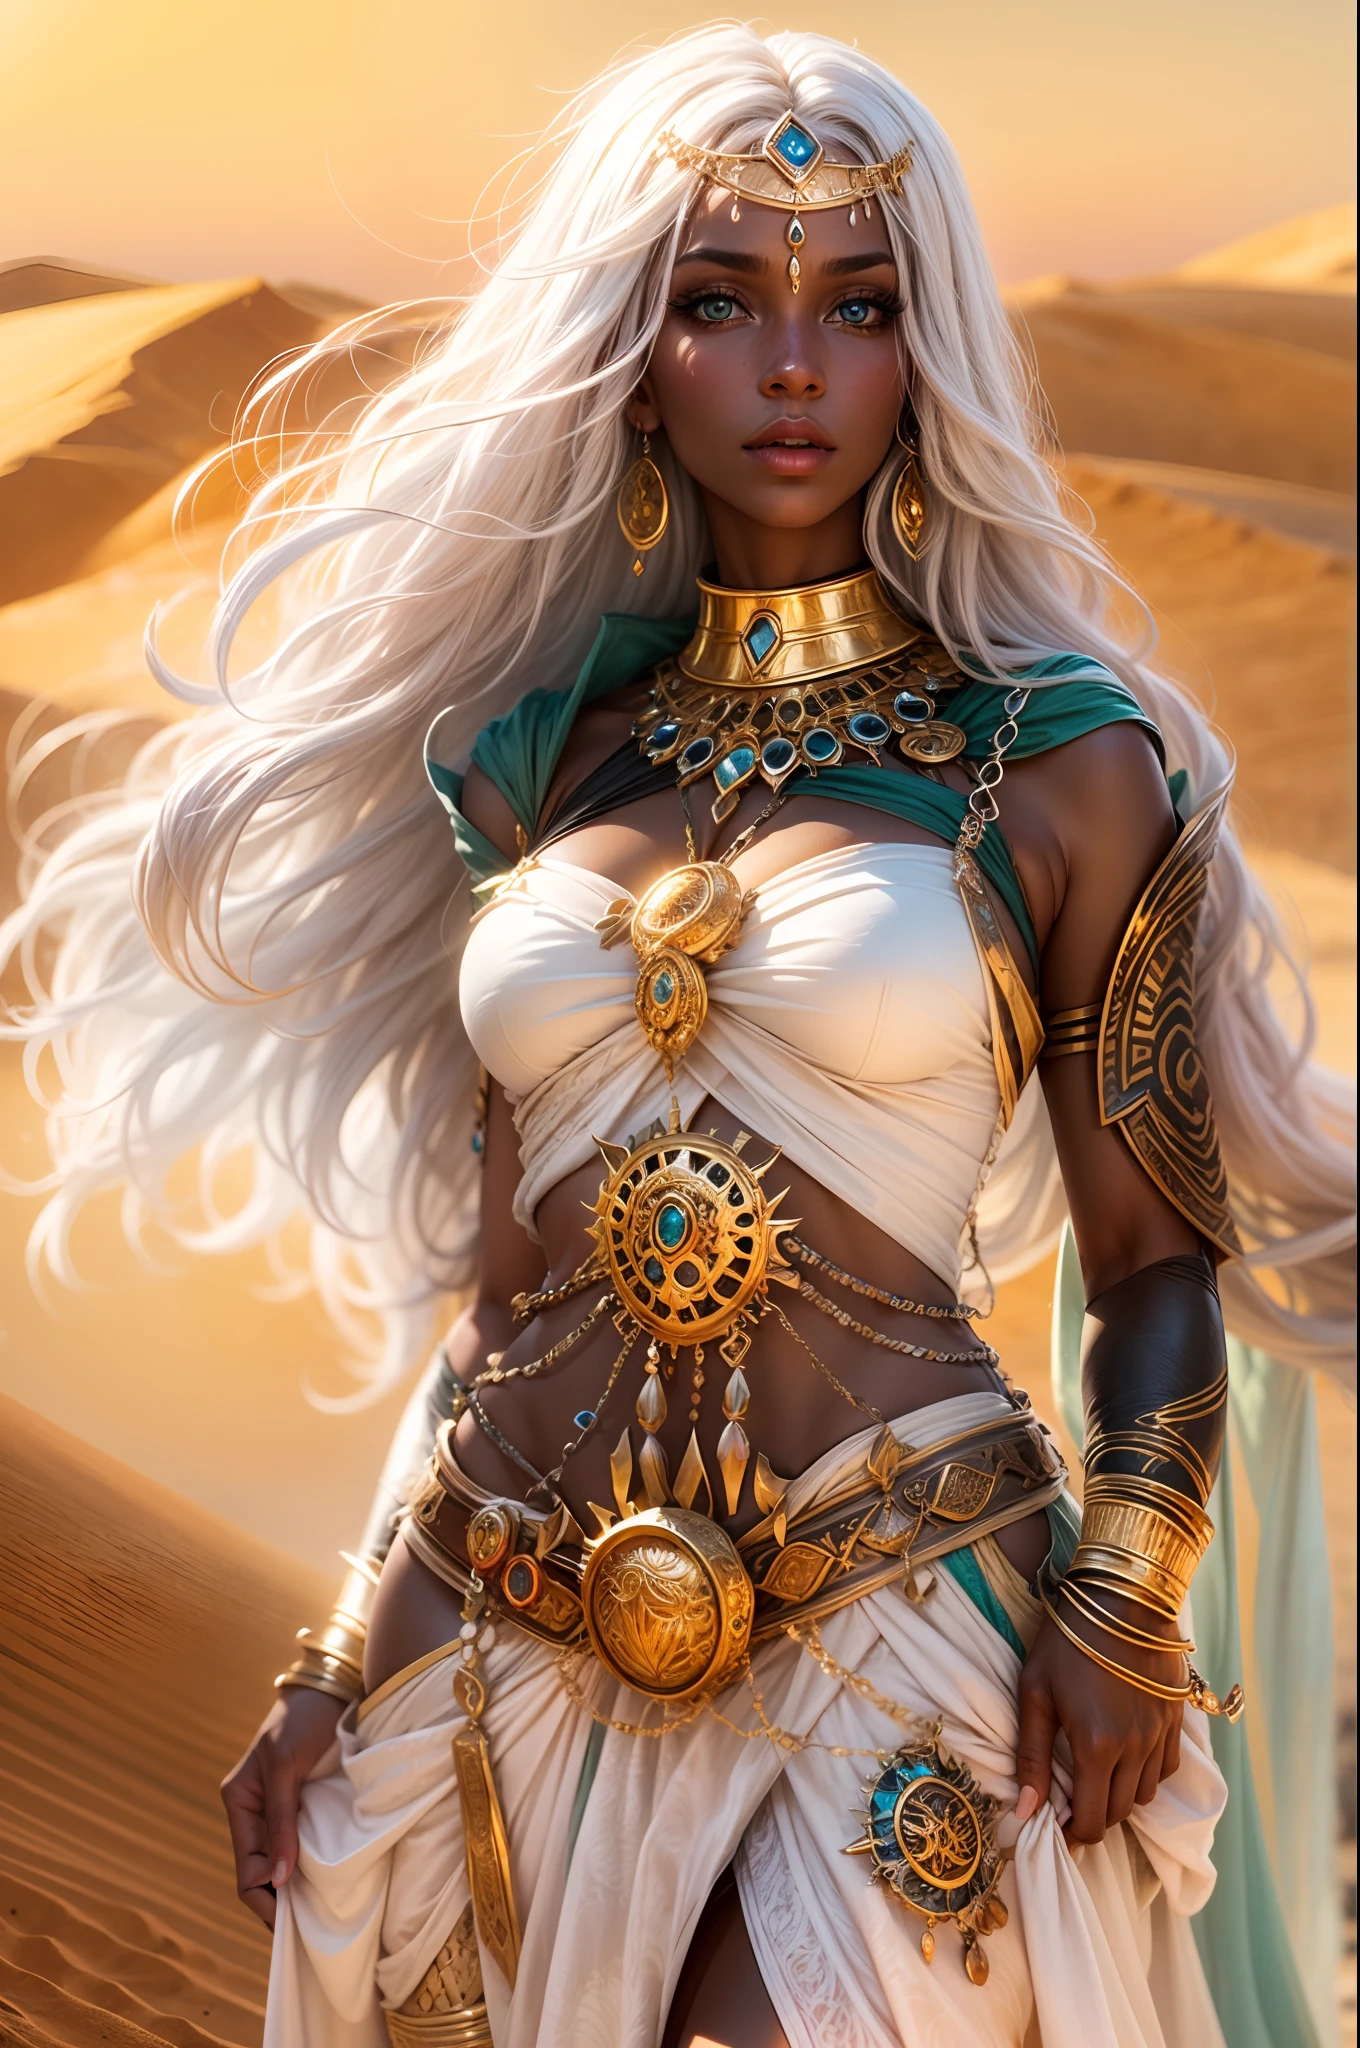 黑皮膚白髮的女妖姬形象, sexy 幻想 clothes, ancient 幻想 Egyth style, 奢華珠寶, 超級性感和火辣, 在沙漠上, 迷人的目光, 全身,艺术风格:幻想,颜色:豐富而充滿活力,燈光:柔和的金色陽光